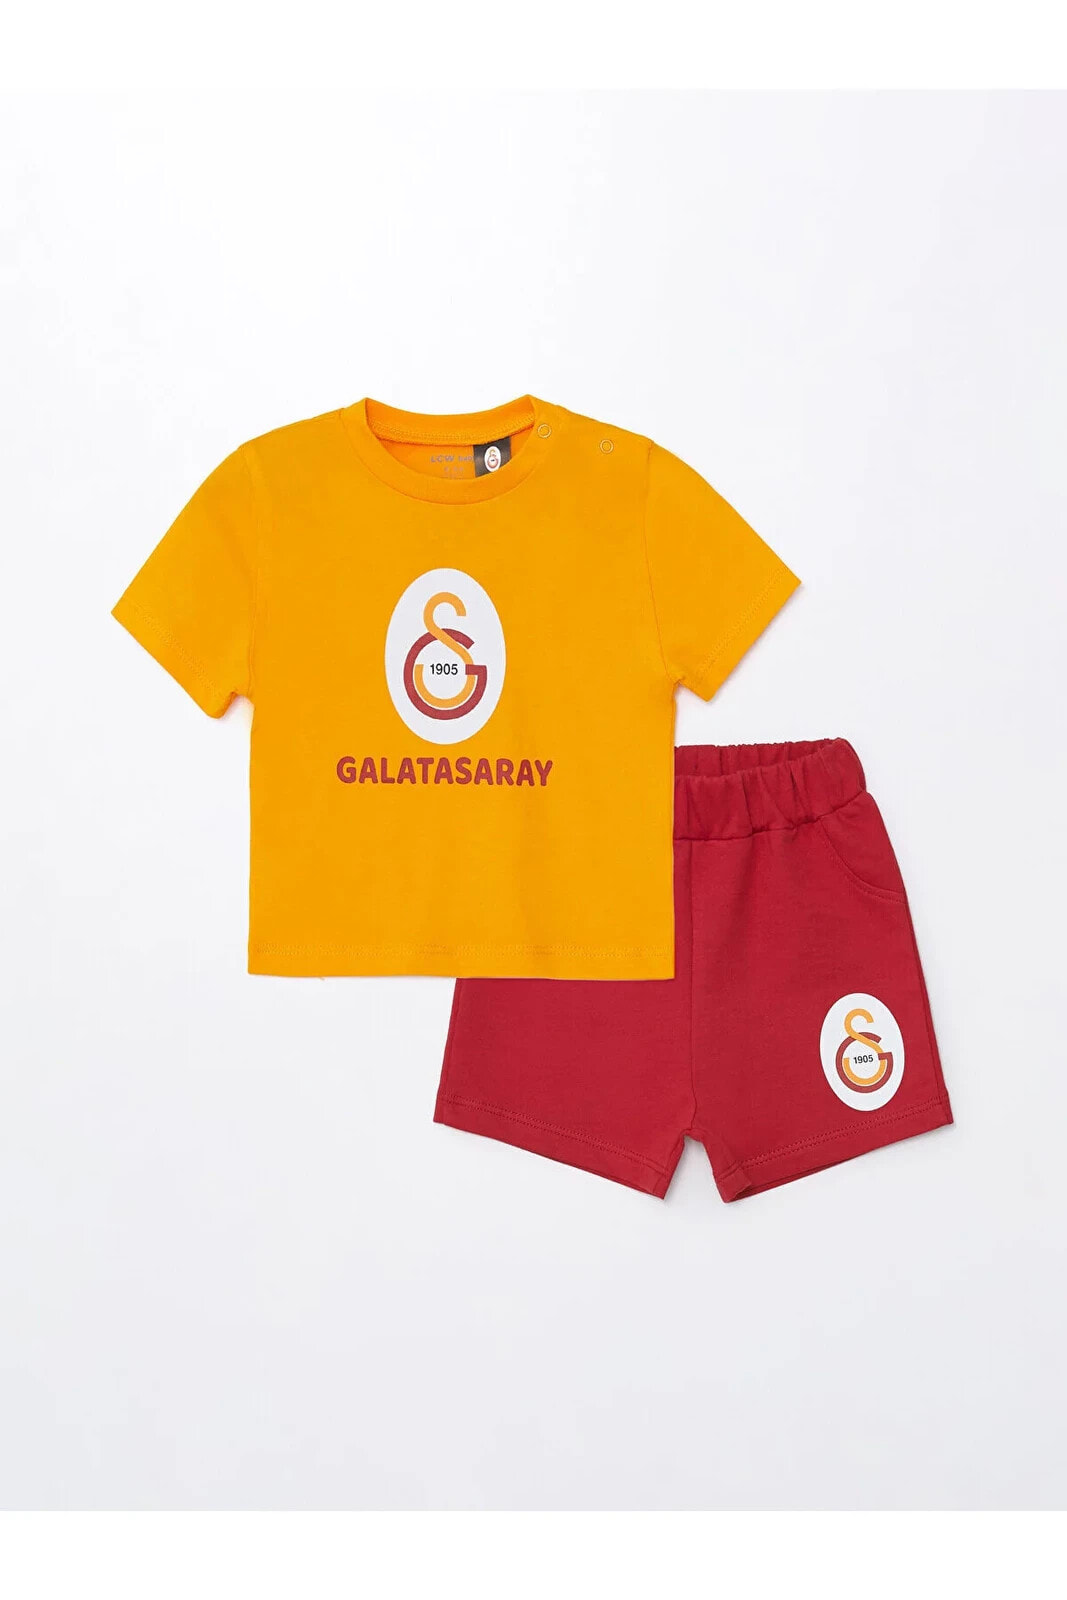 Bisiklet Yaka Galatasaray Baskılı Erkek Bebek Tişört Ve Şort 2'li Takım